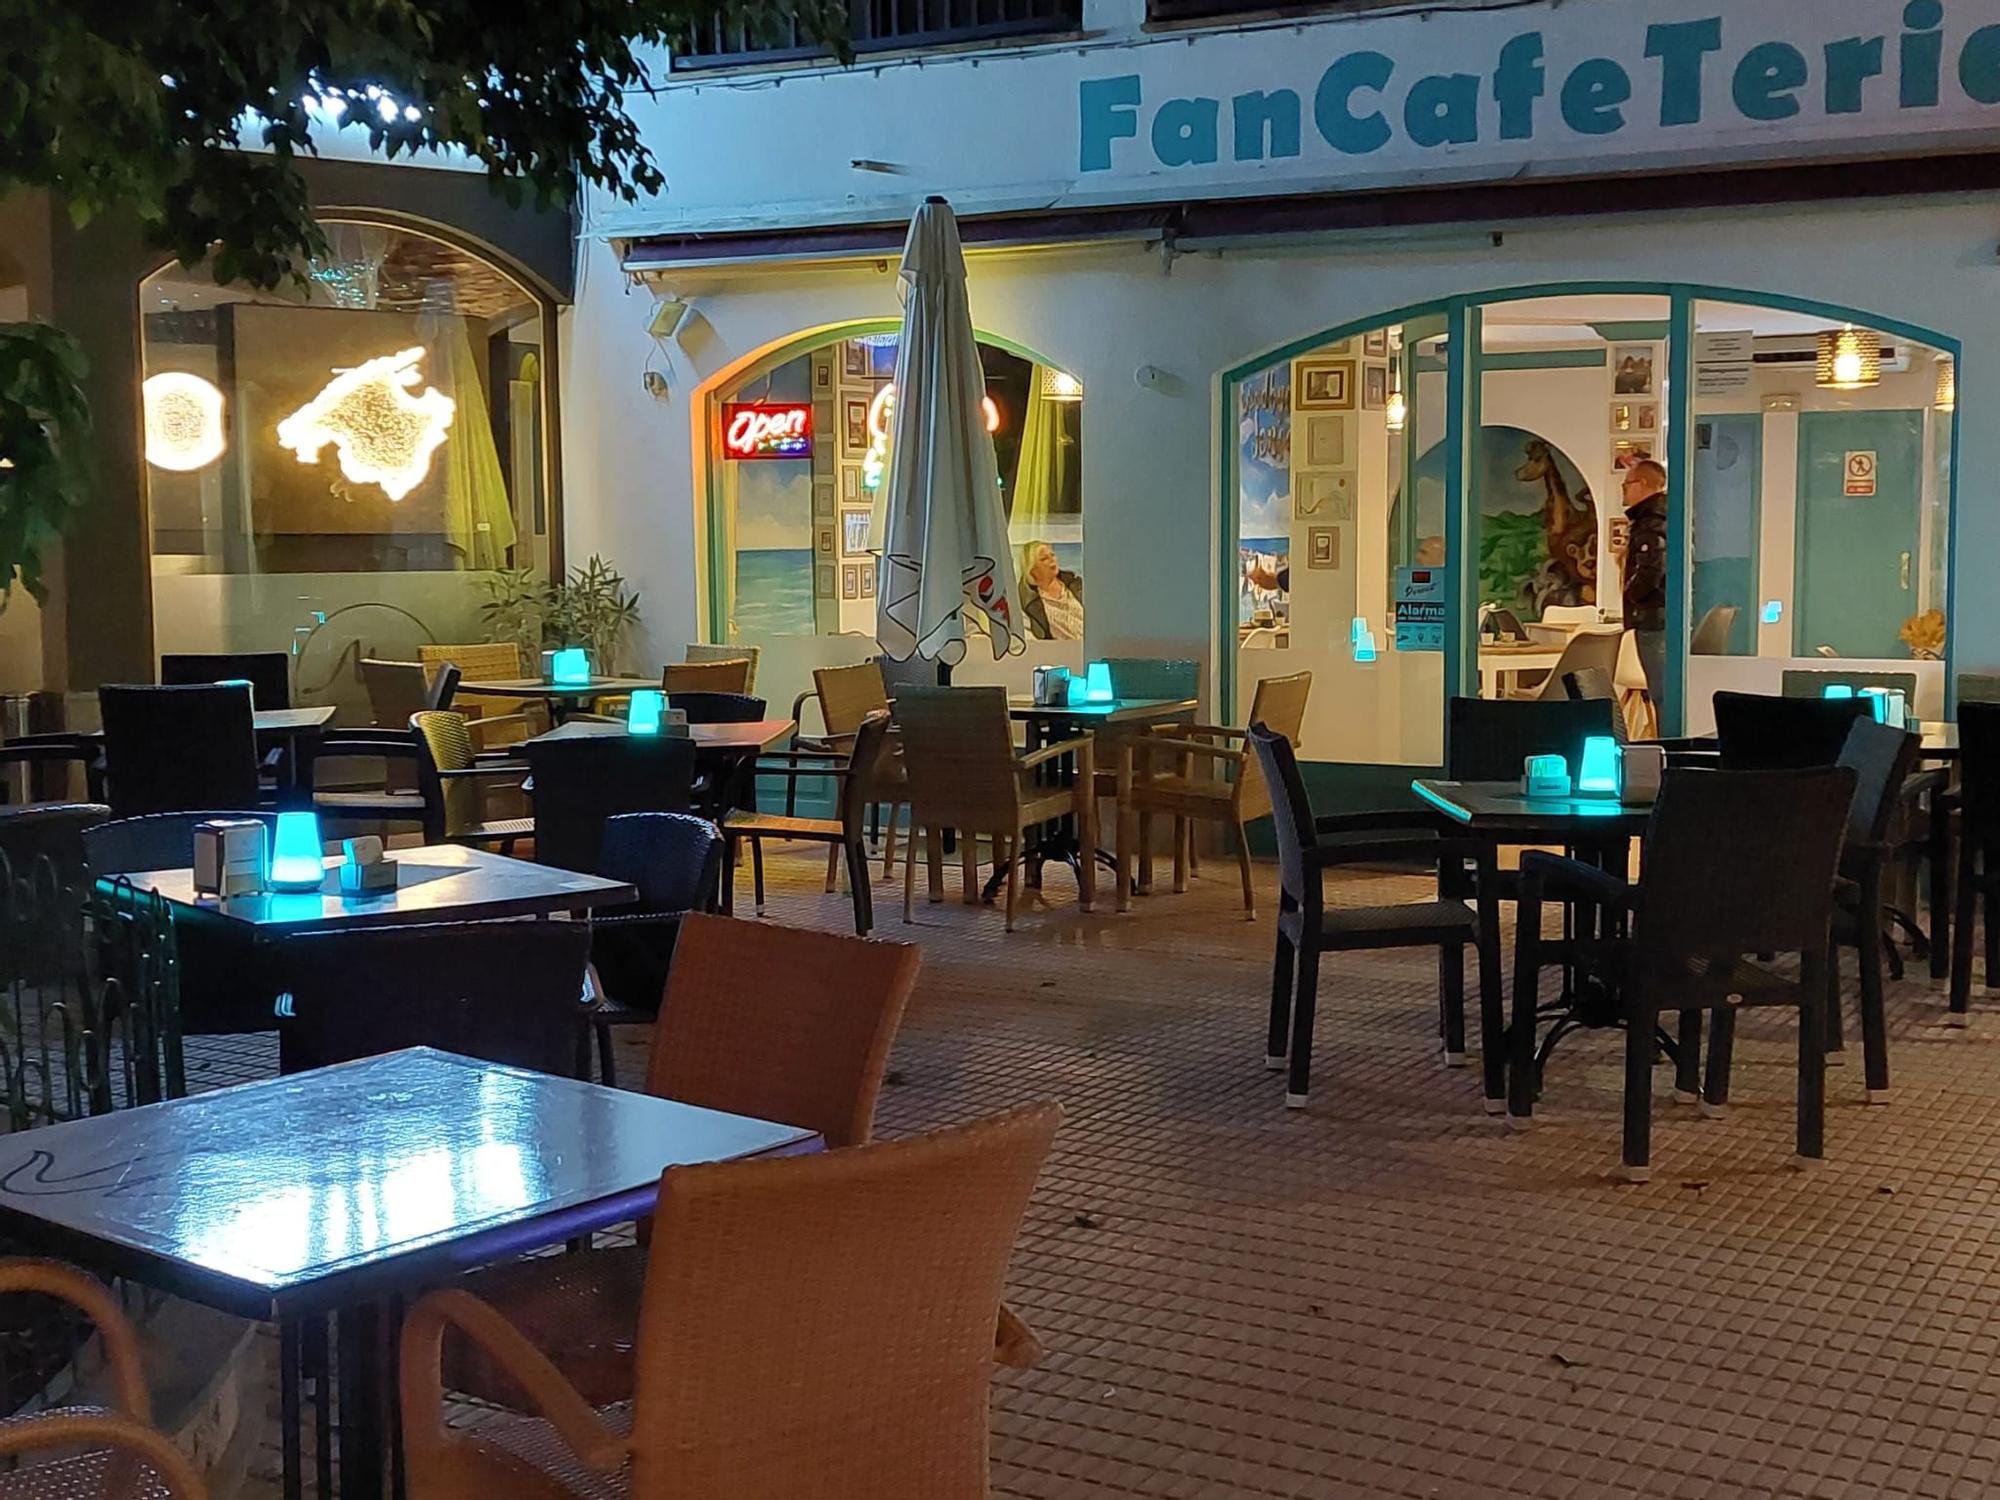 So sieht die FanCafeTeria bei Nacht aus.